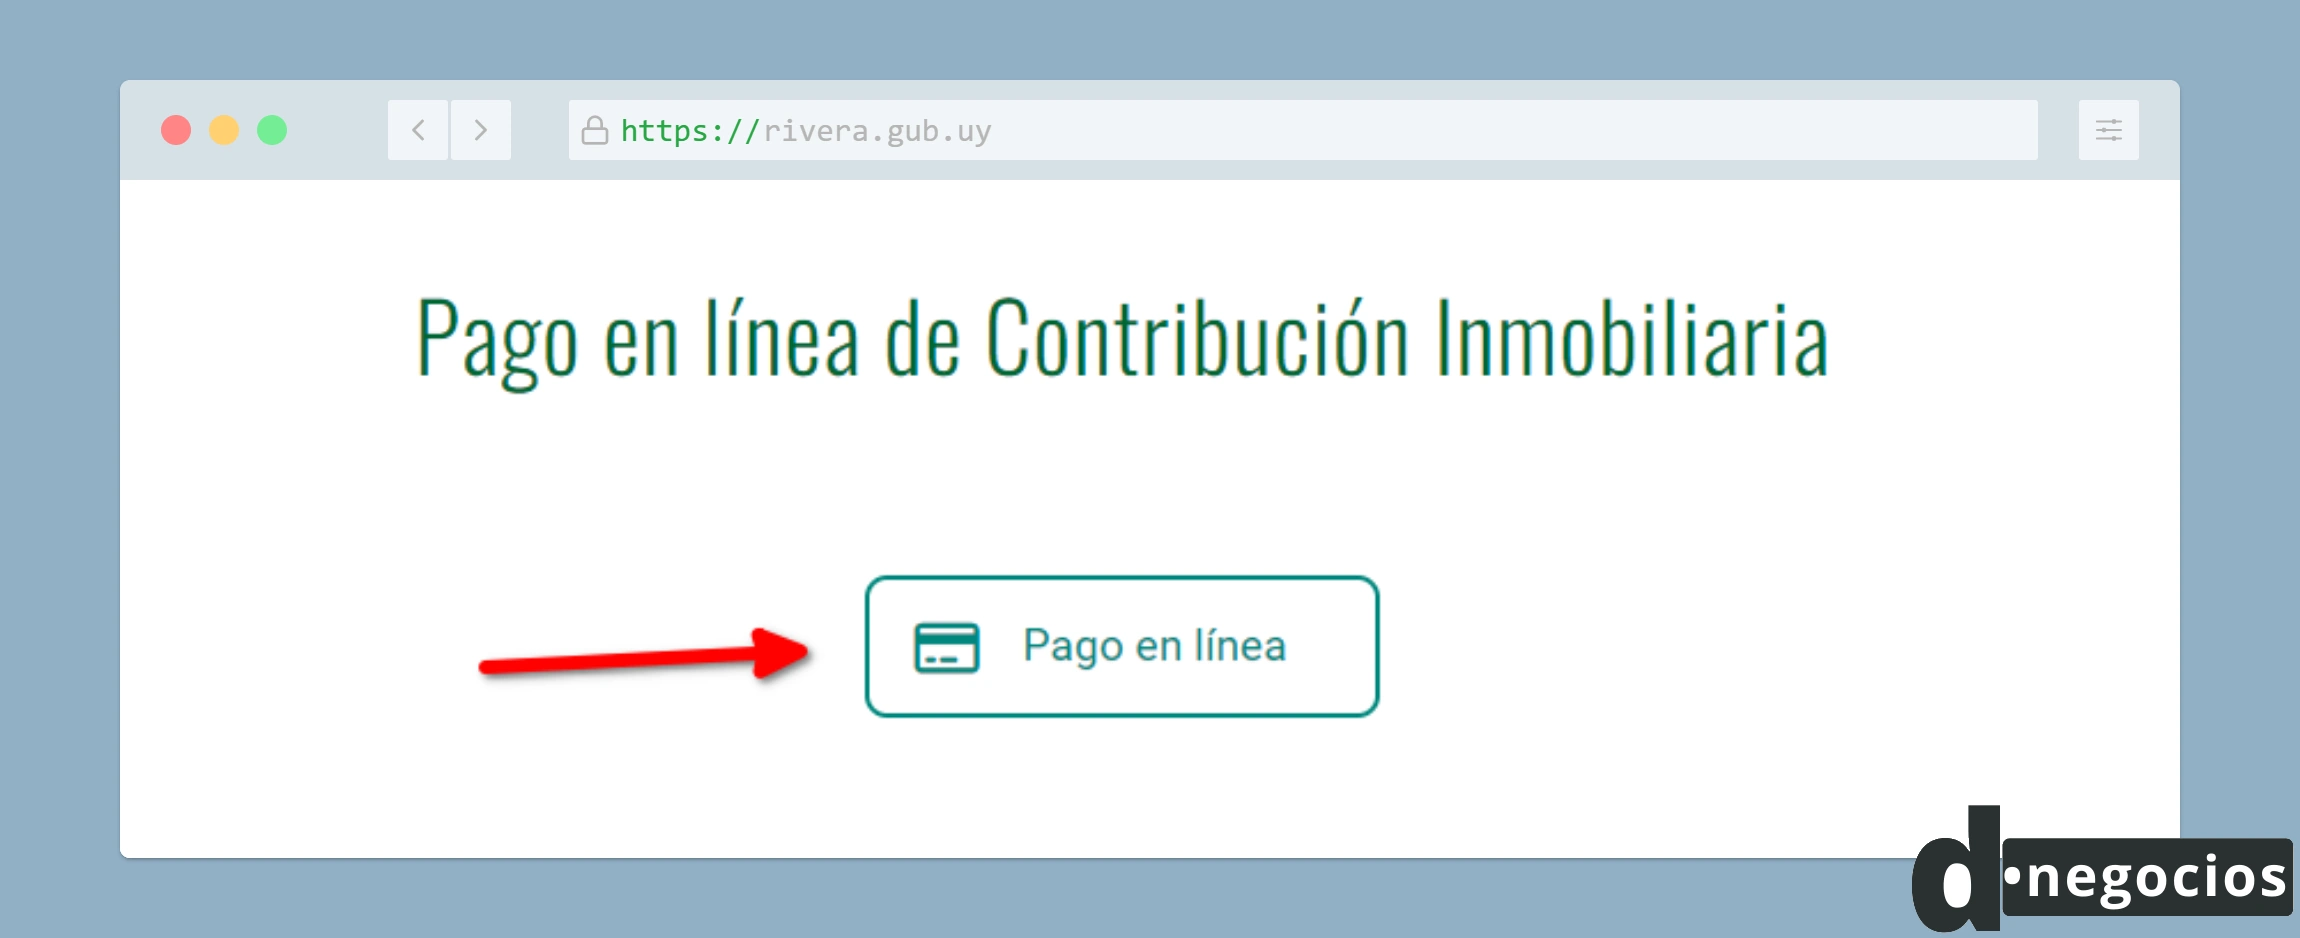 Acceso al pago en línea de la contribución inmobiliaria desde el sitio web de la Intendencia de Rivera.